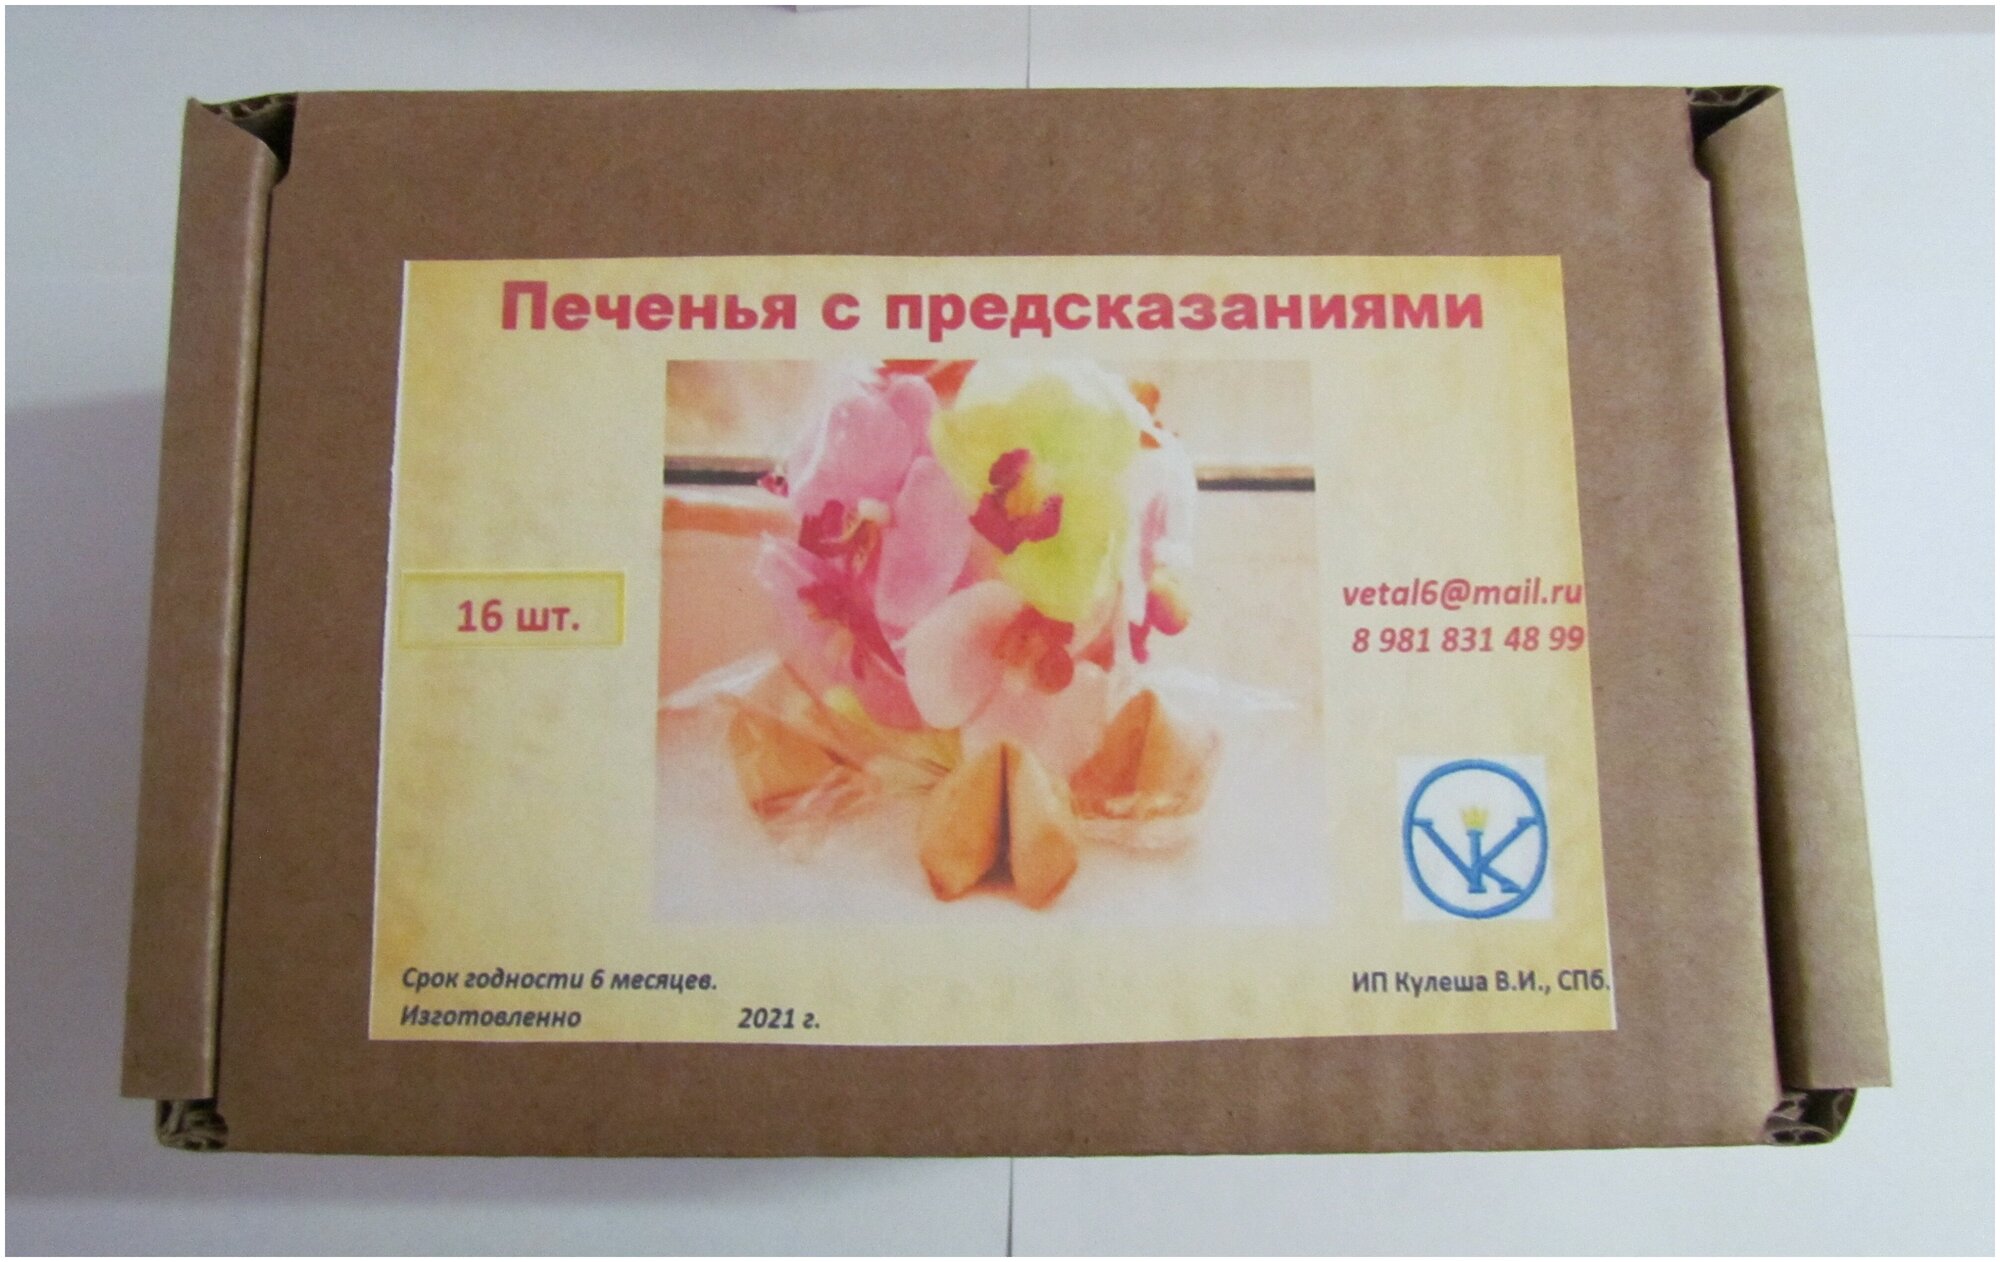 Печенья с предсказаниями в индивидуальной упаковке, 16 шт + 1 в подарок на удачу. - фотография № 2